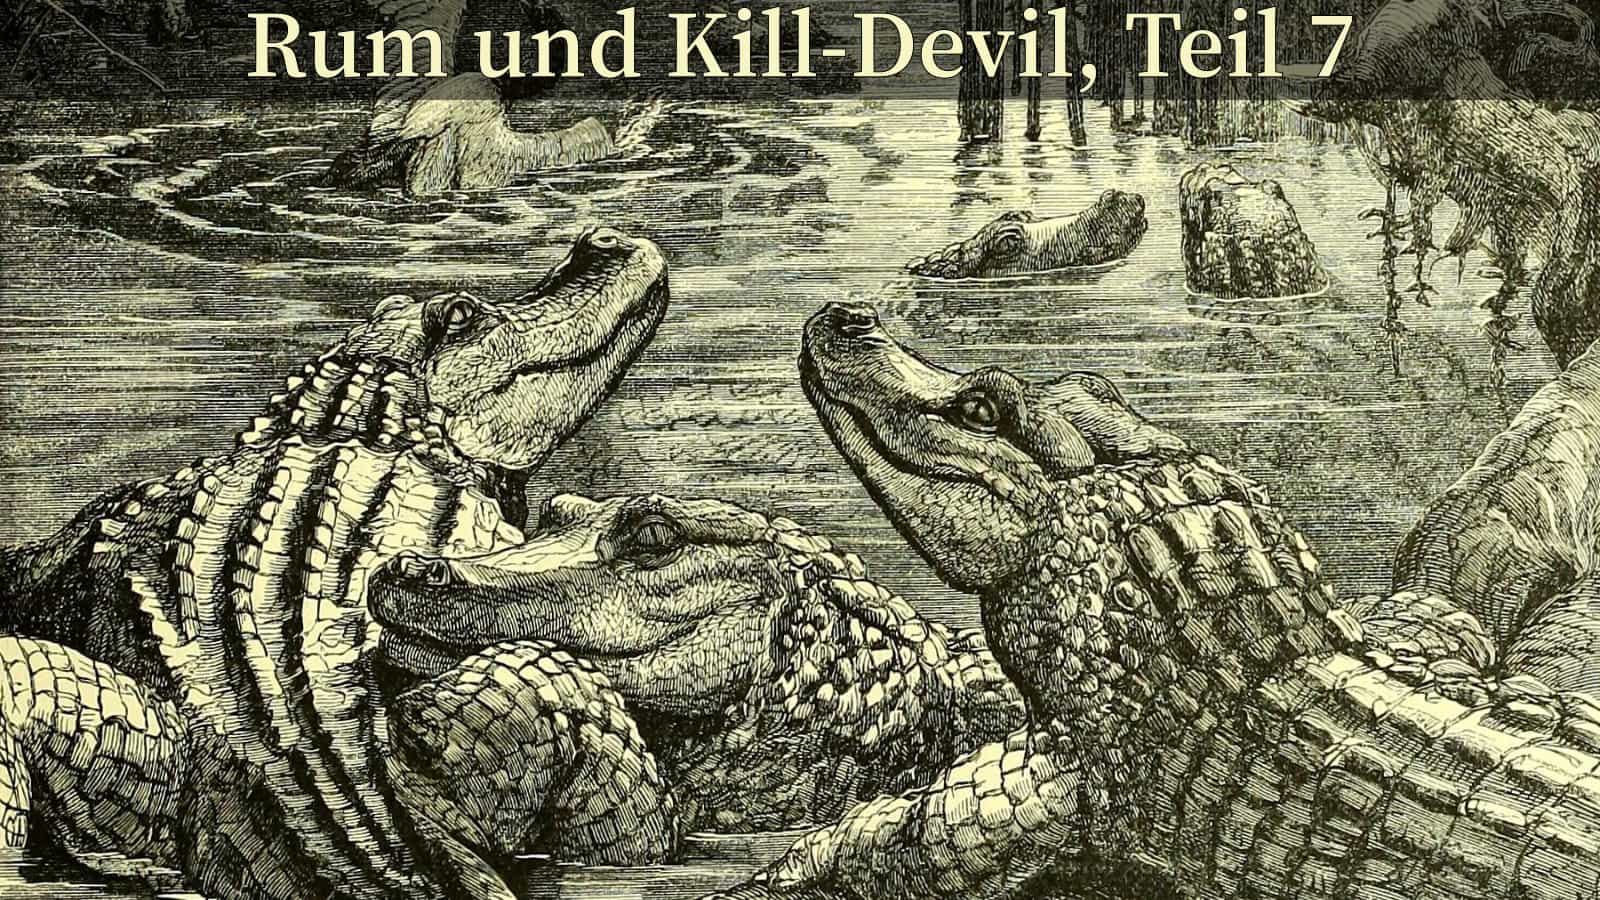 Titelbild - Rum und Kill-Devil, Teil 7.